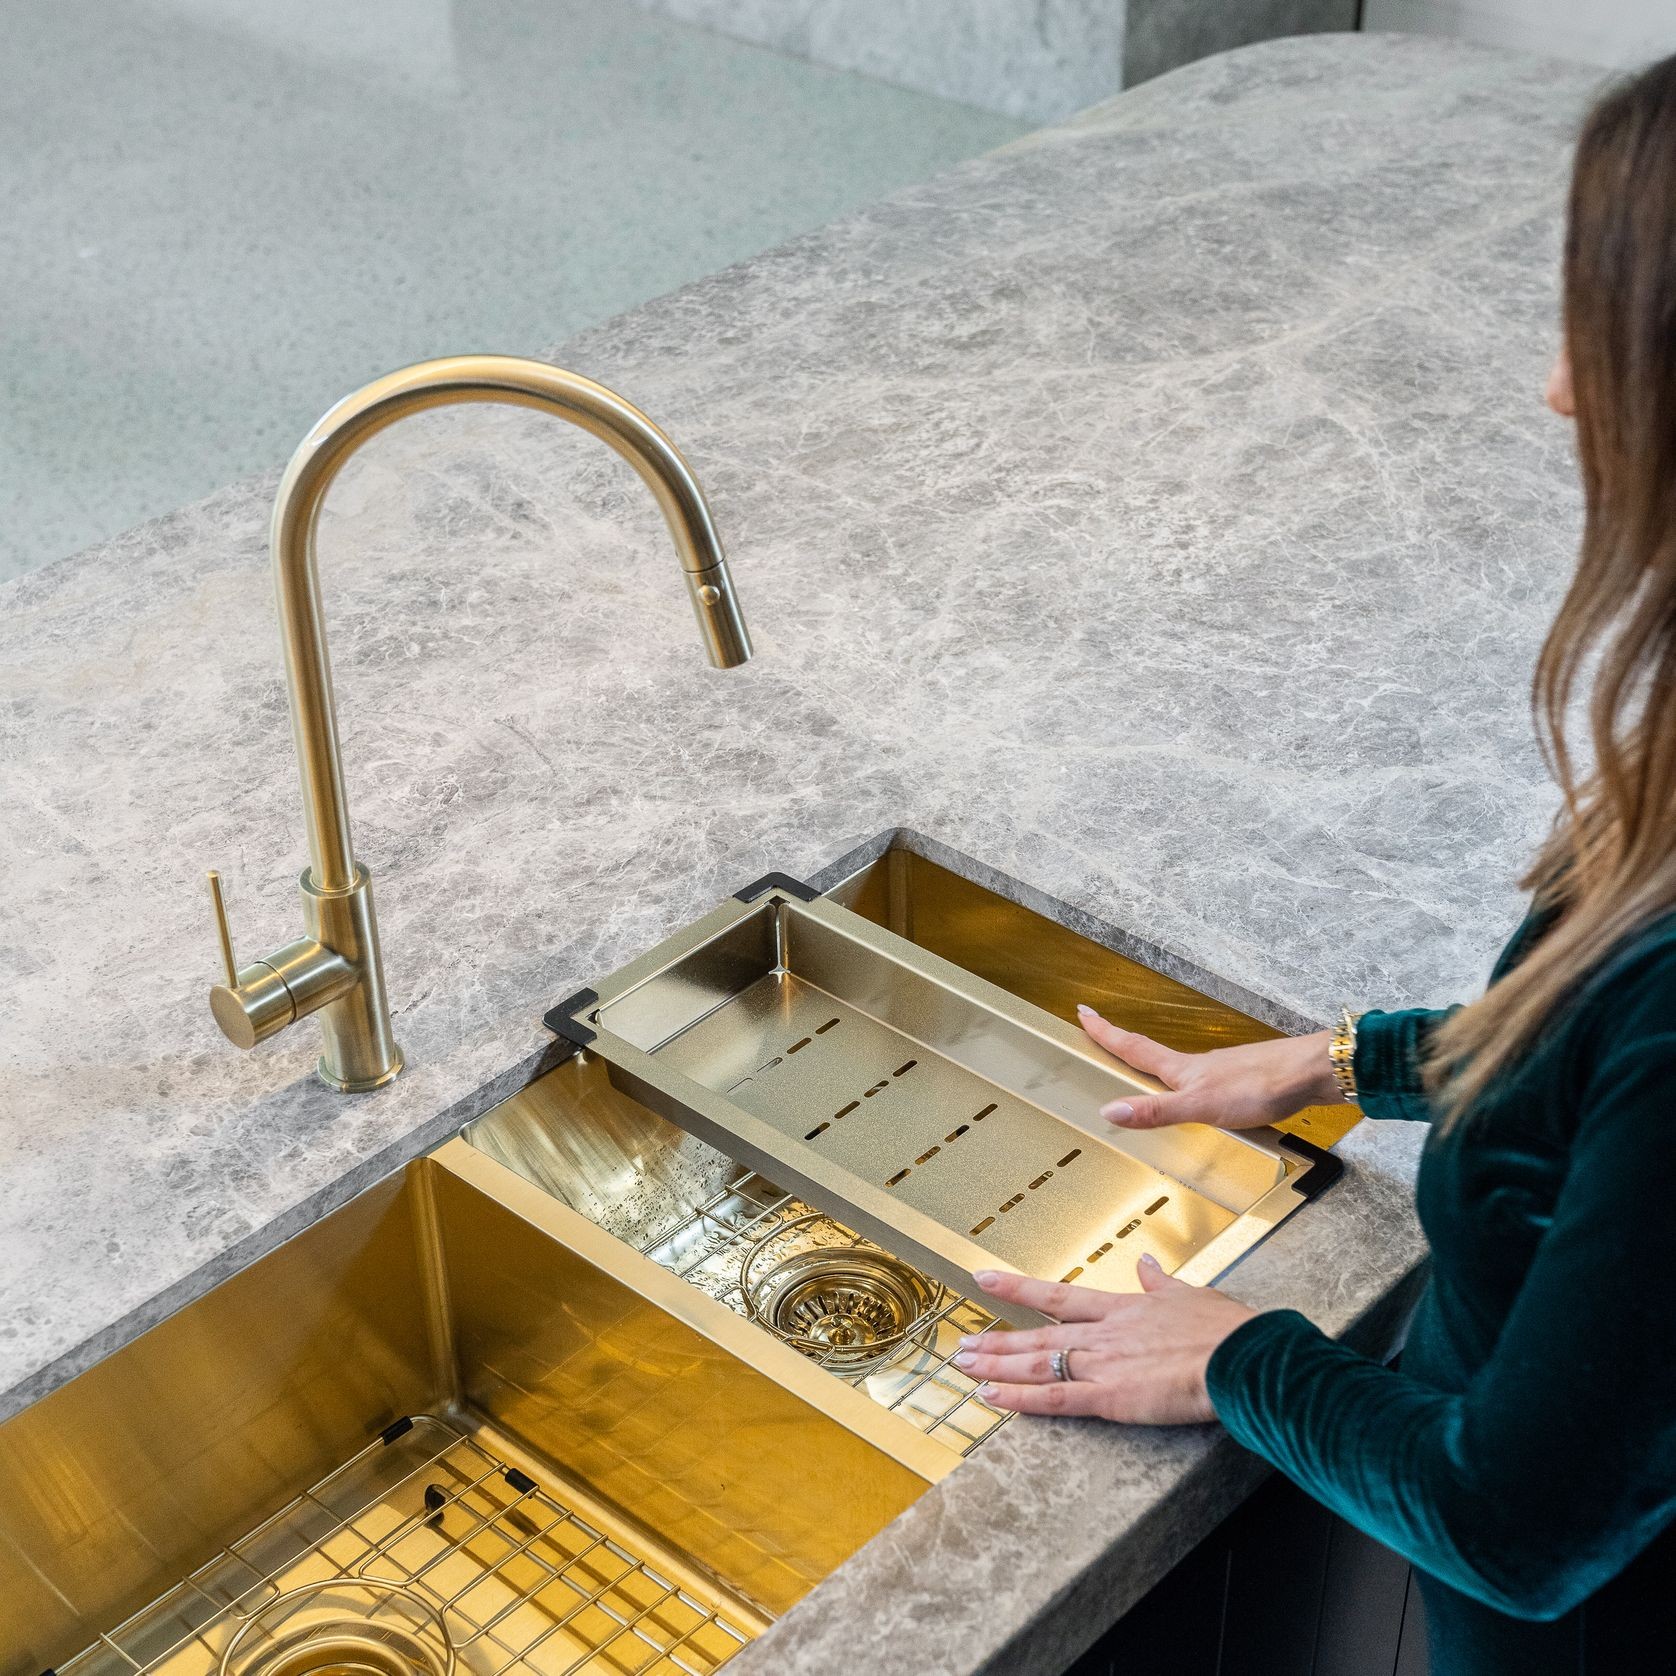 Lavello Kitchen Sink Colander by Meir - Bronze Gold gallery detail image